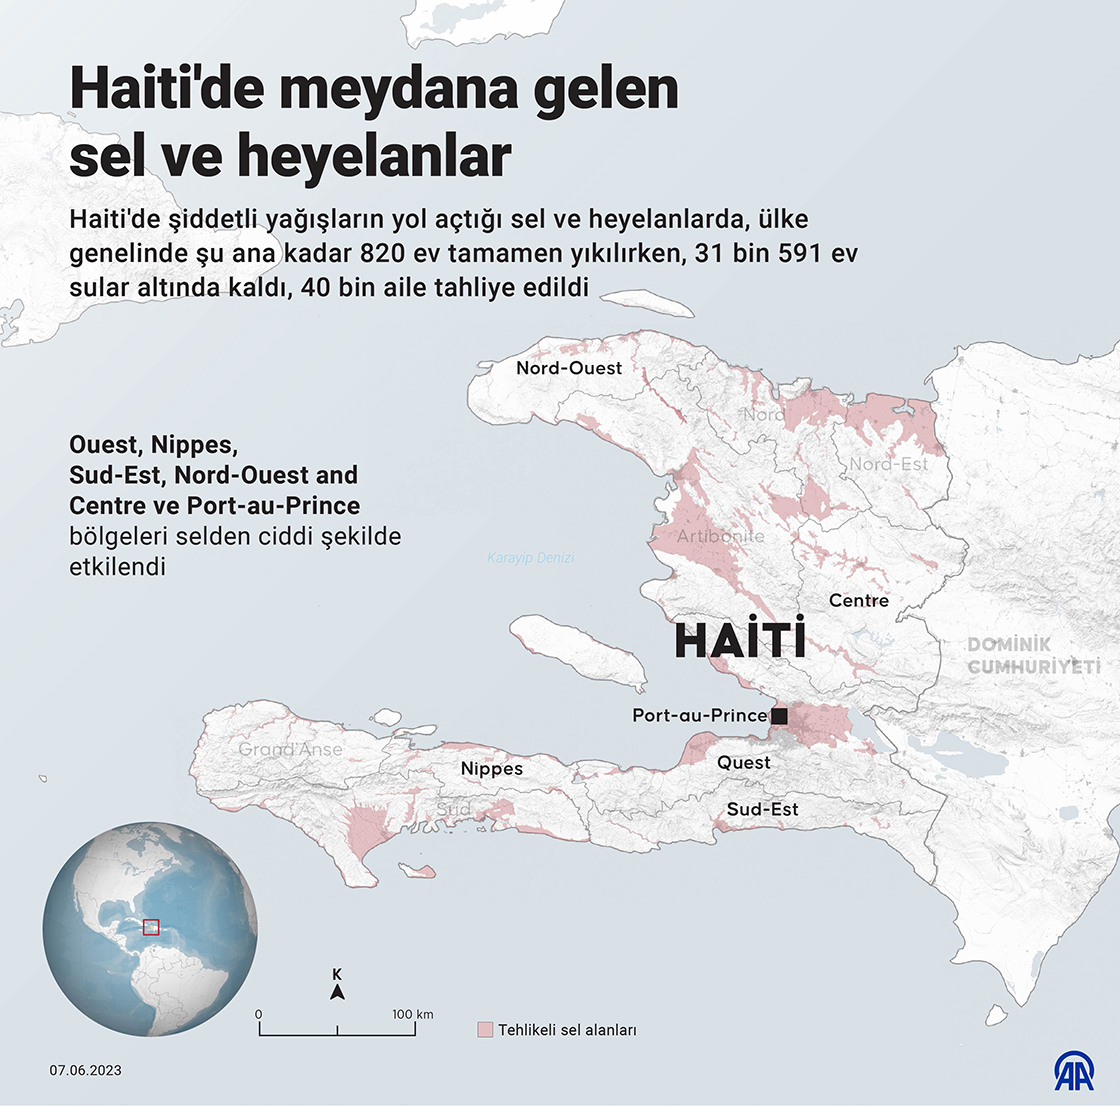 Haiti'de meydana gelen sel ve heyelanlar